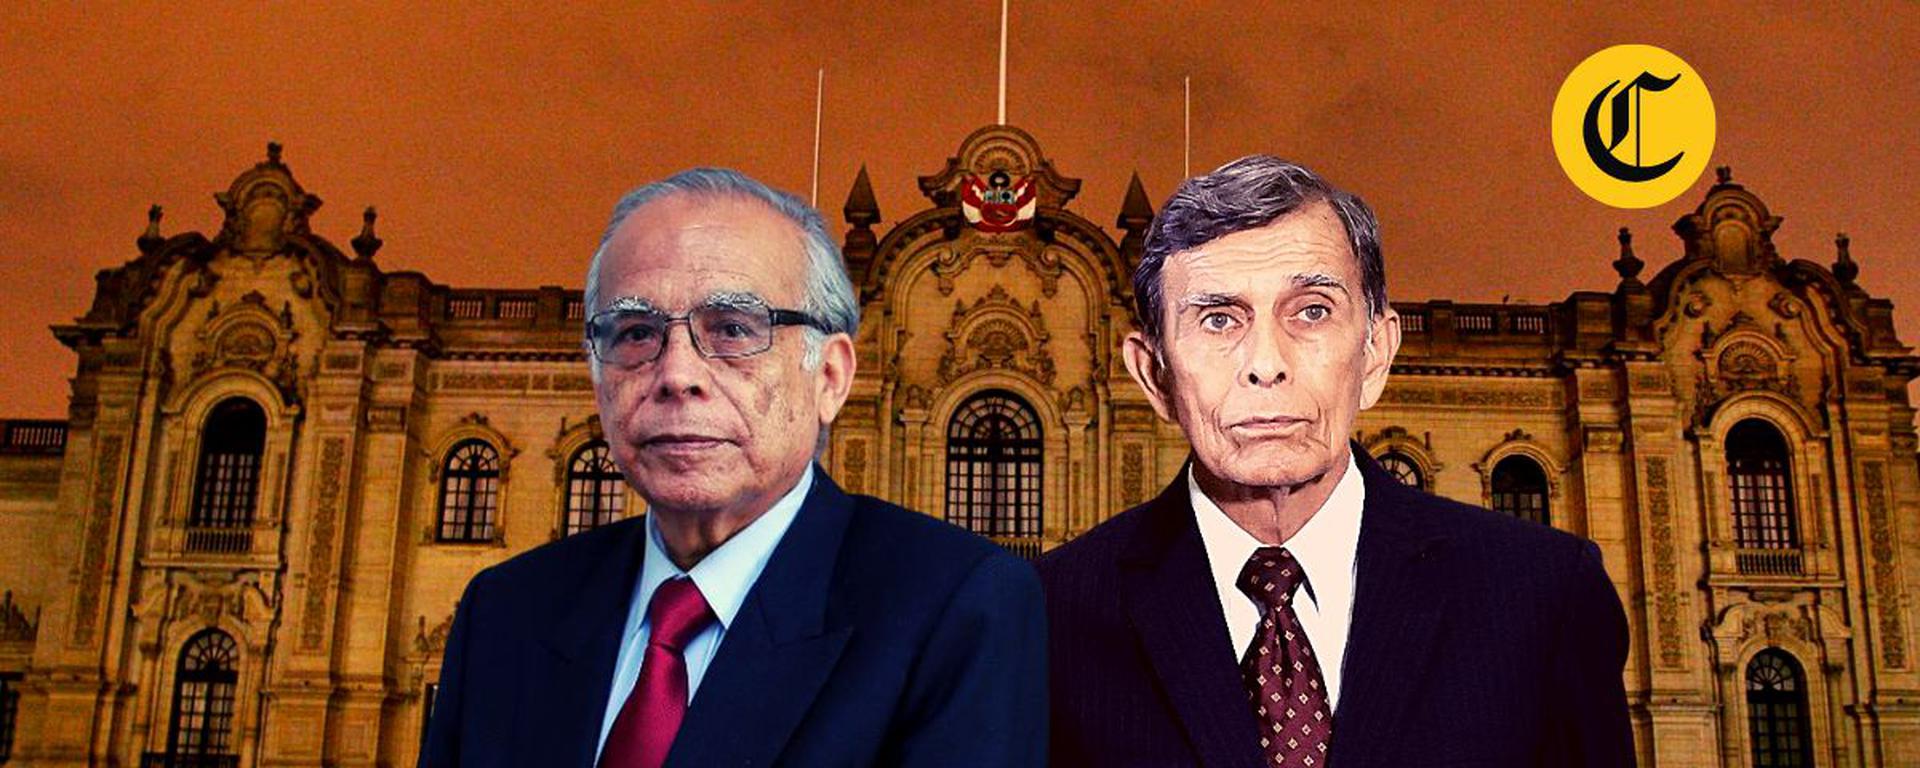 Testigo de investigación por el golpe de estado admite reunión con Aníbal Torres, pese a prohibición judicial